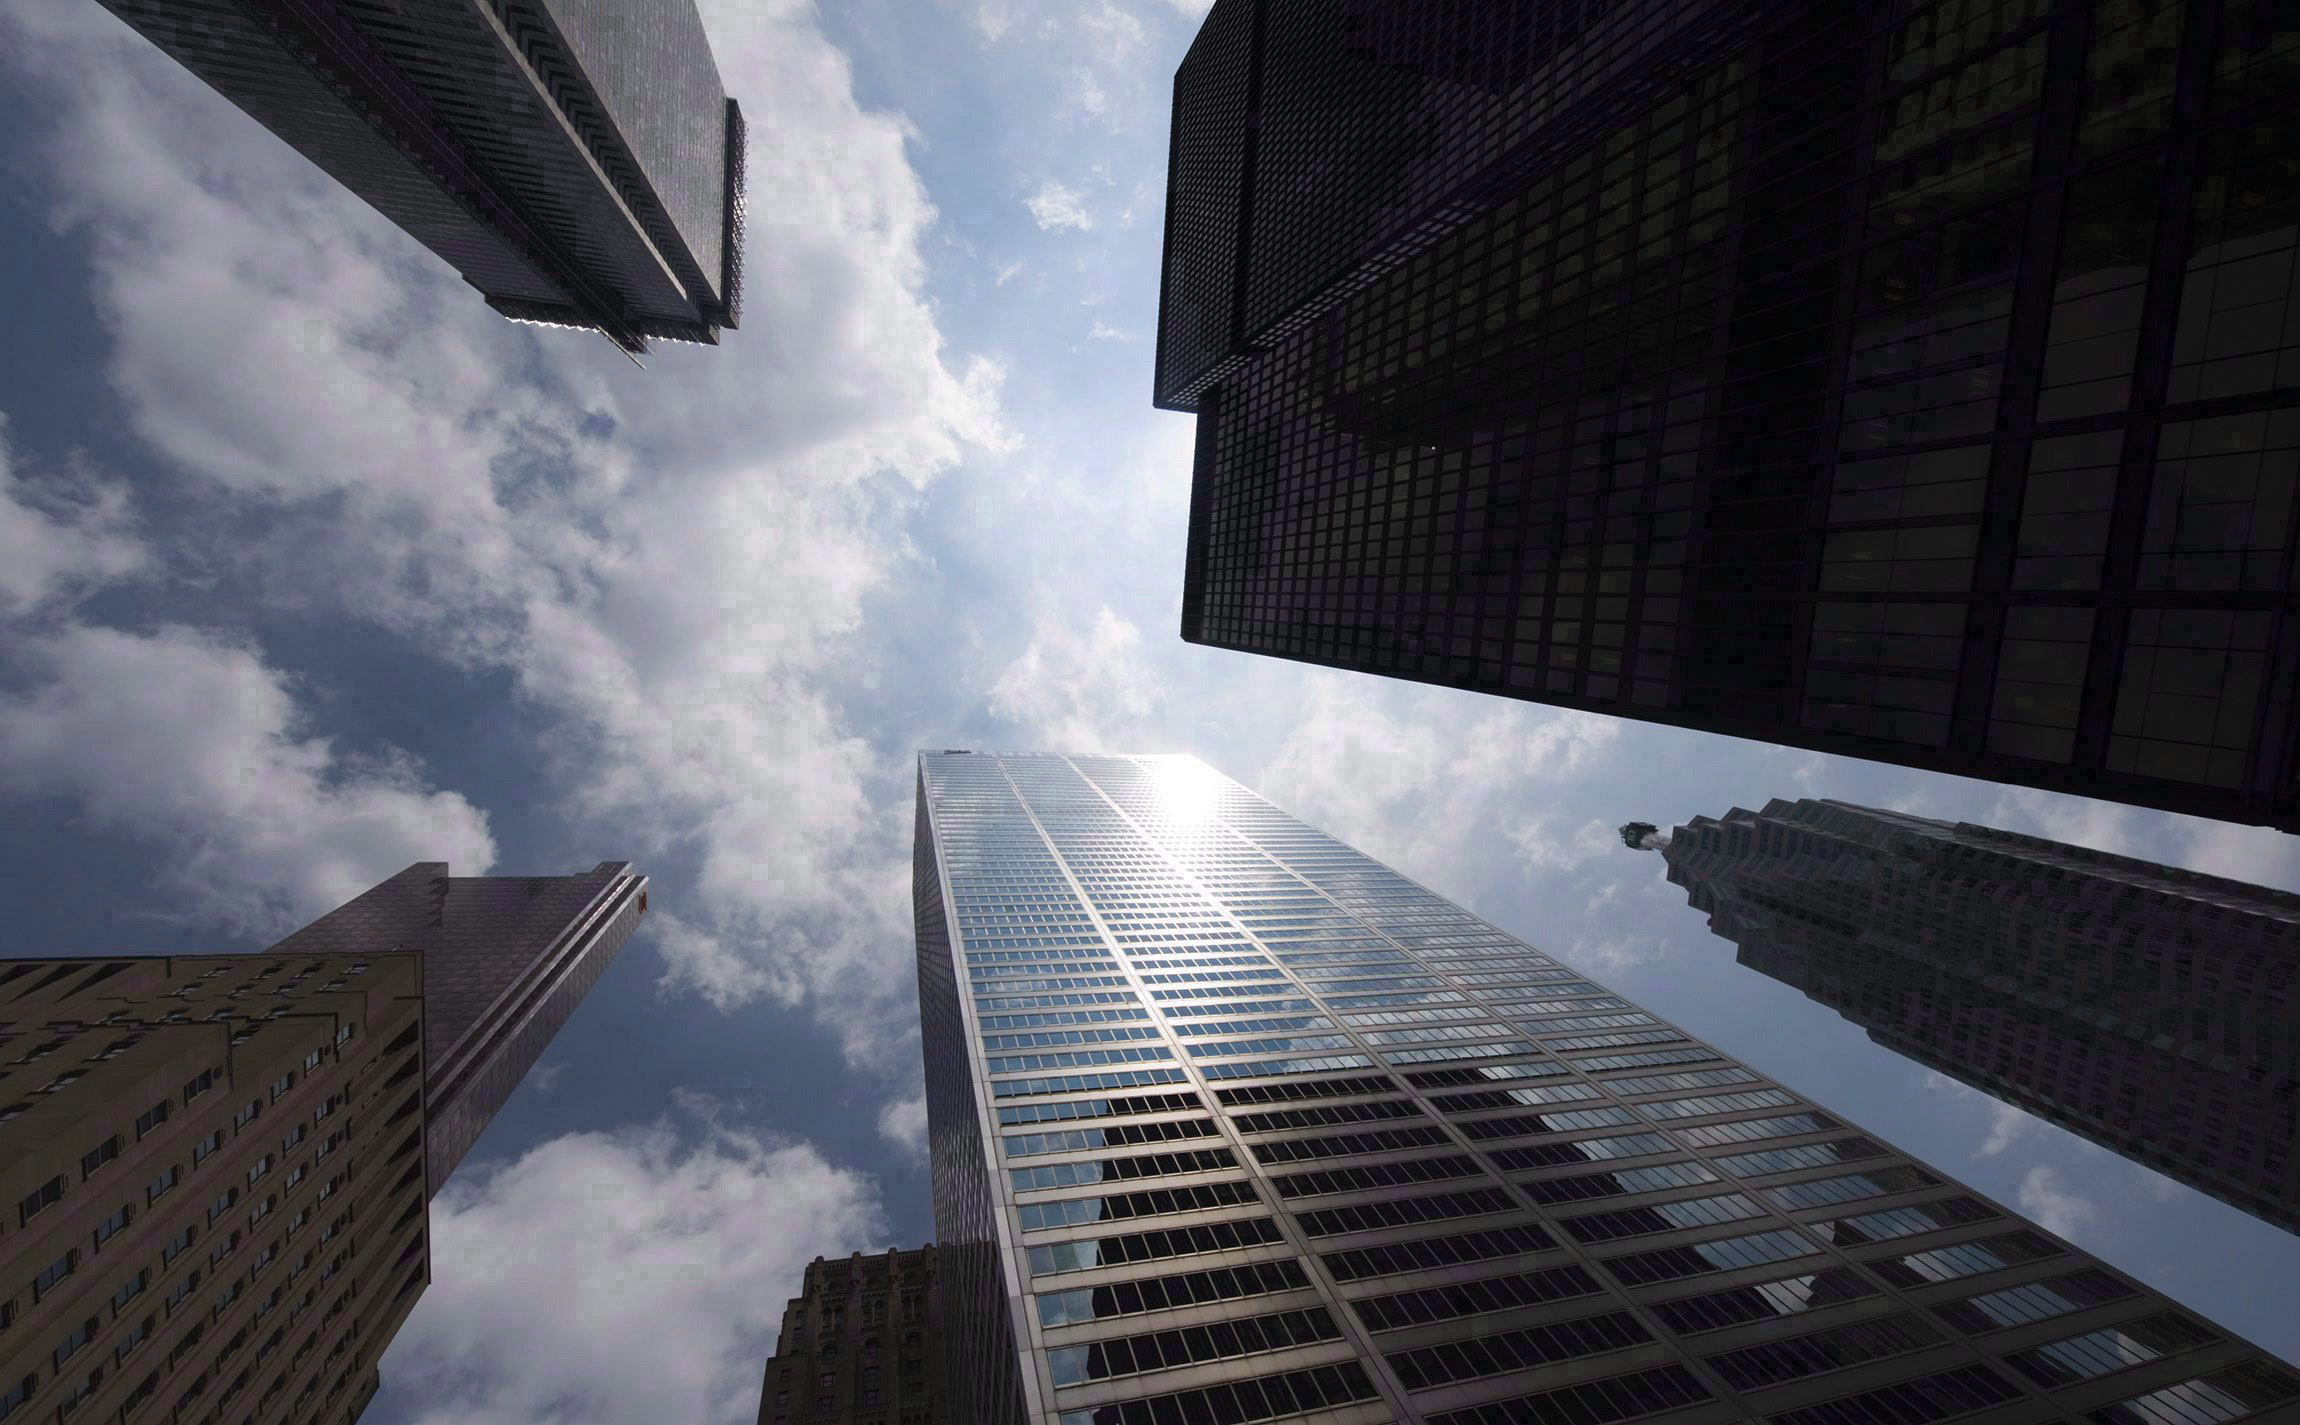 Canadian lenders should set aside more capital as mortgage risks mount: regulator